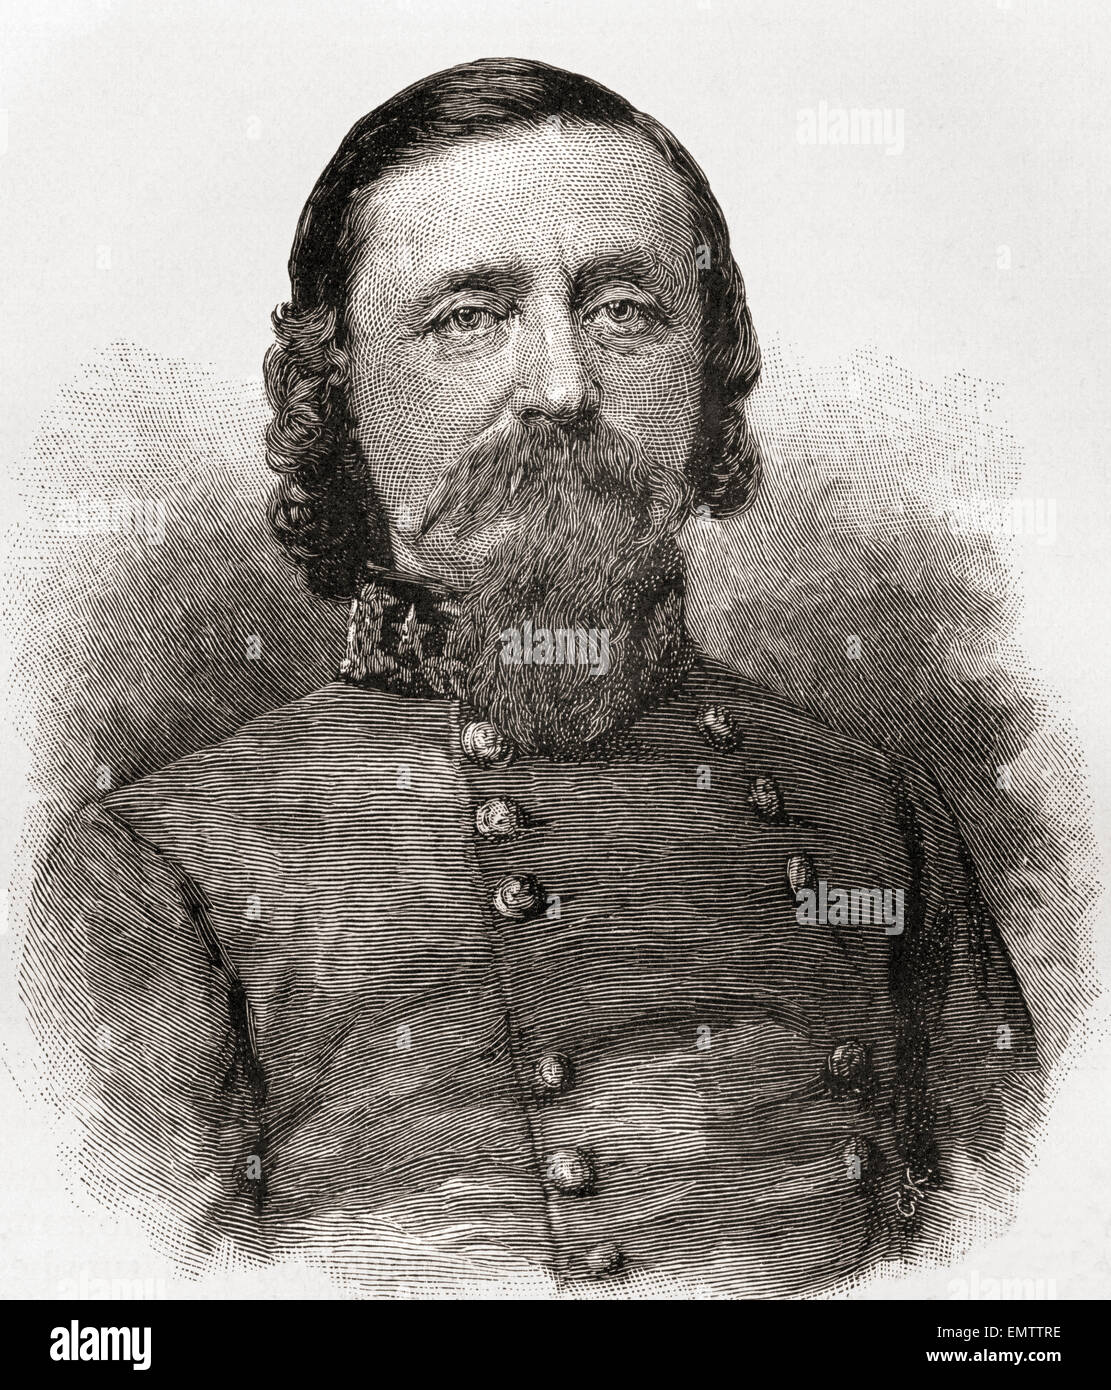 George Edward Pickett, 1825 -1875. Carrera oficial del ejército de los Estados Unidos, mayor general en el ejército de los Estados Confederados durante la Guerra Civil Americana. Foto de stock